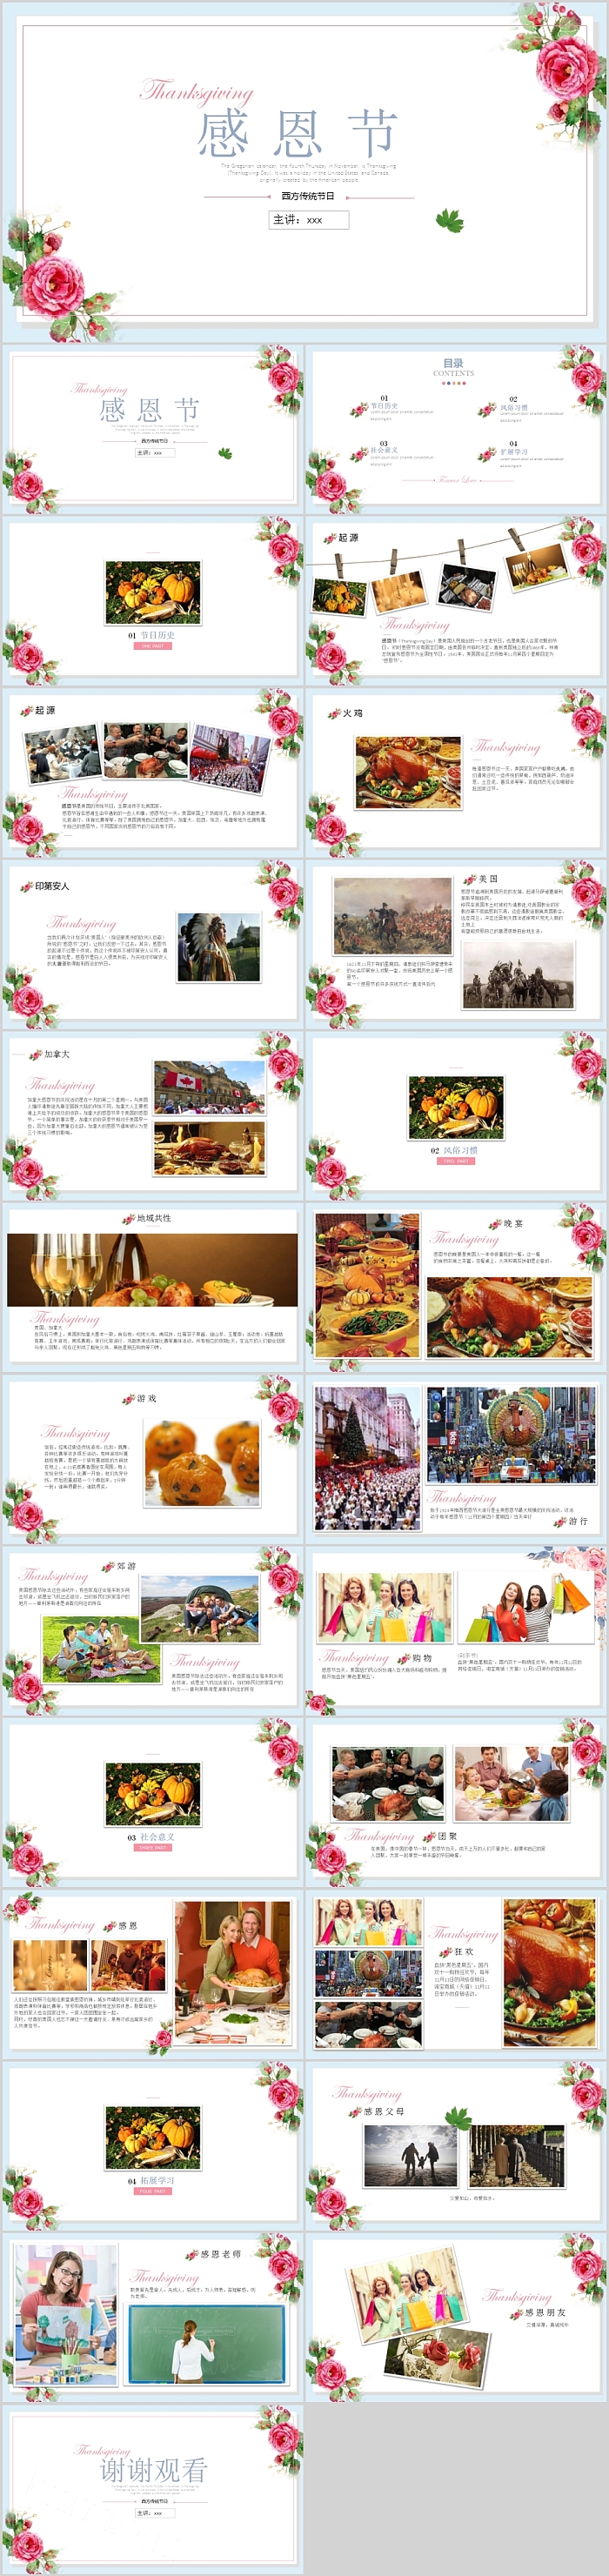 西方传统节日感恩节活动策划节日介绍PPT模板